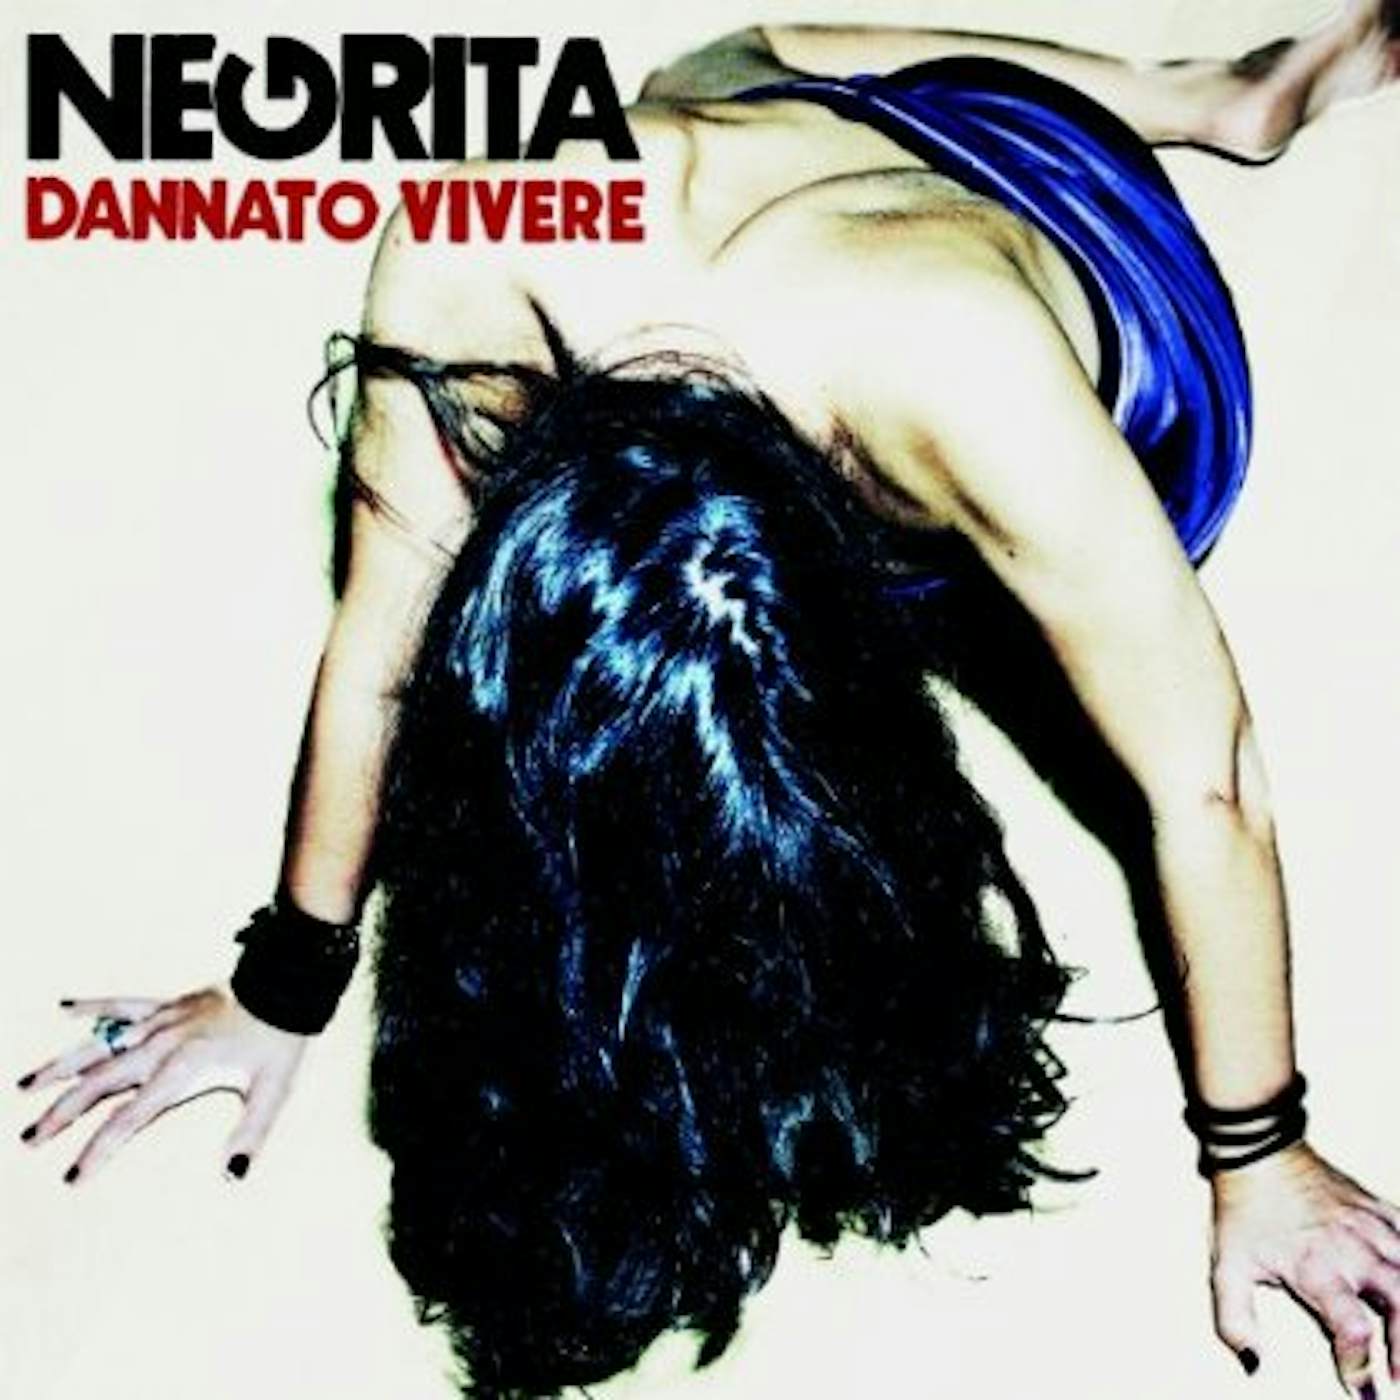 Negrita DANNATO VIVERE (180G VINYL) CD